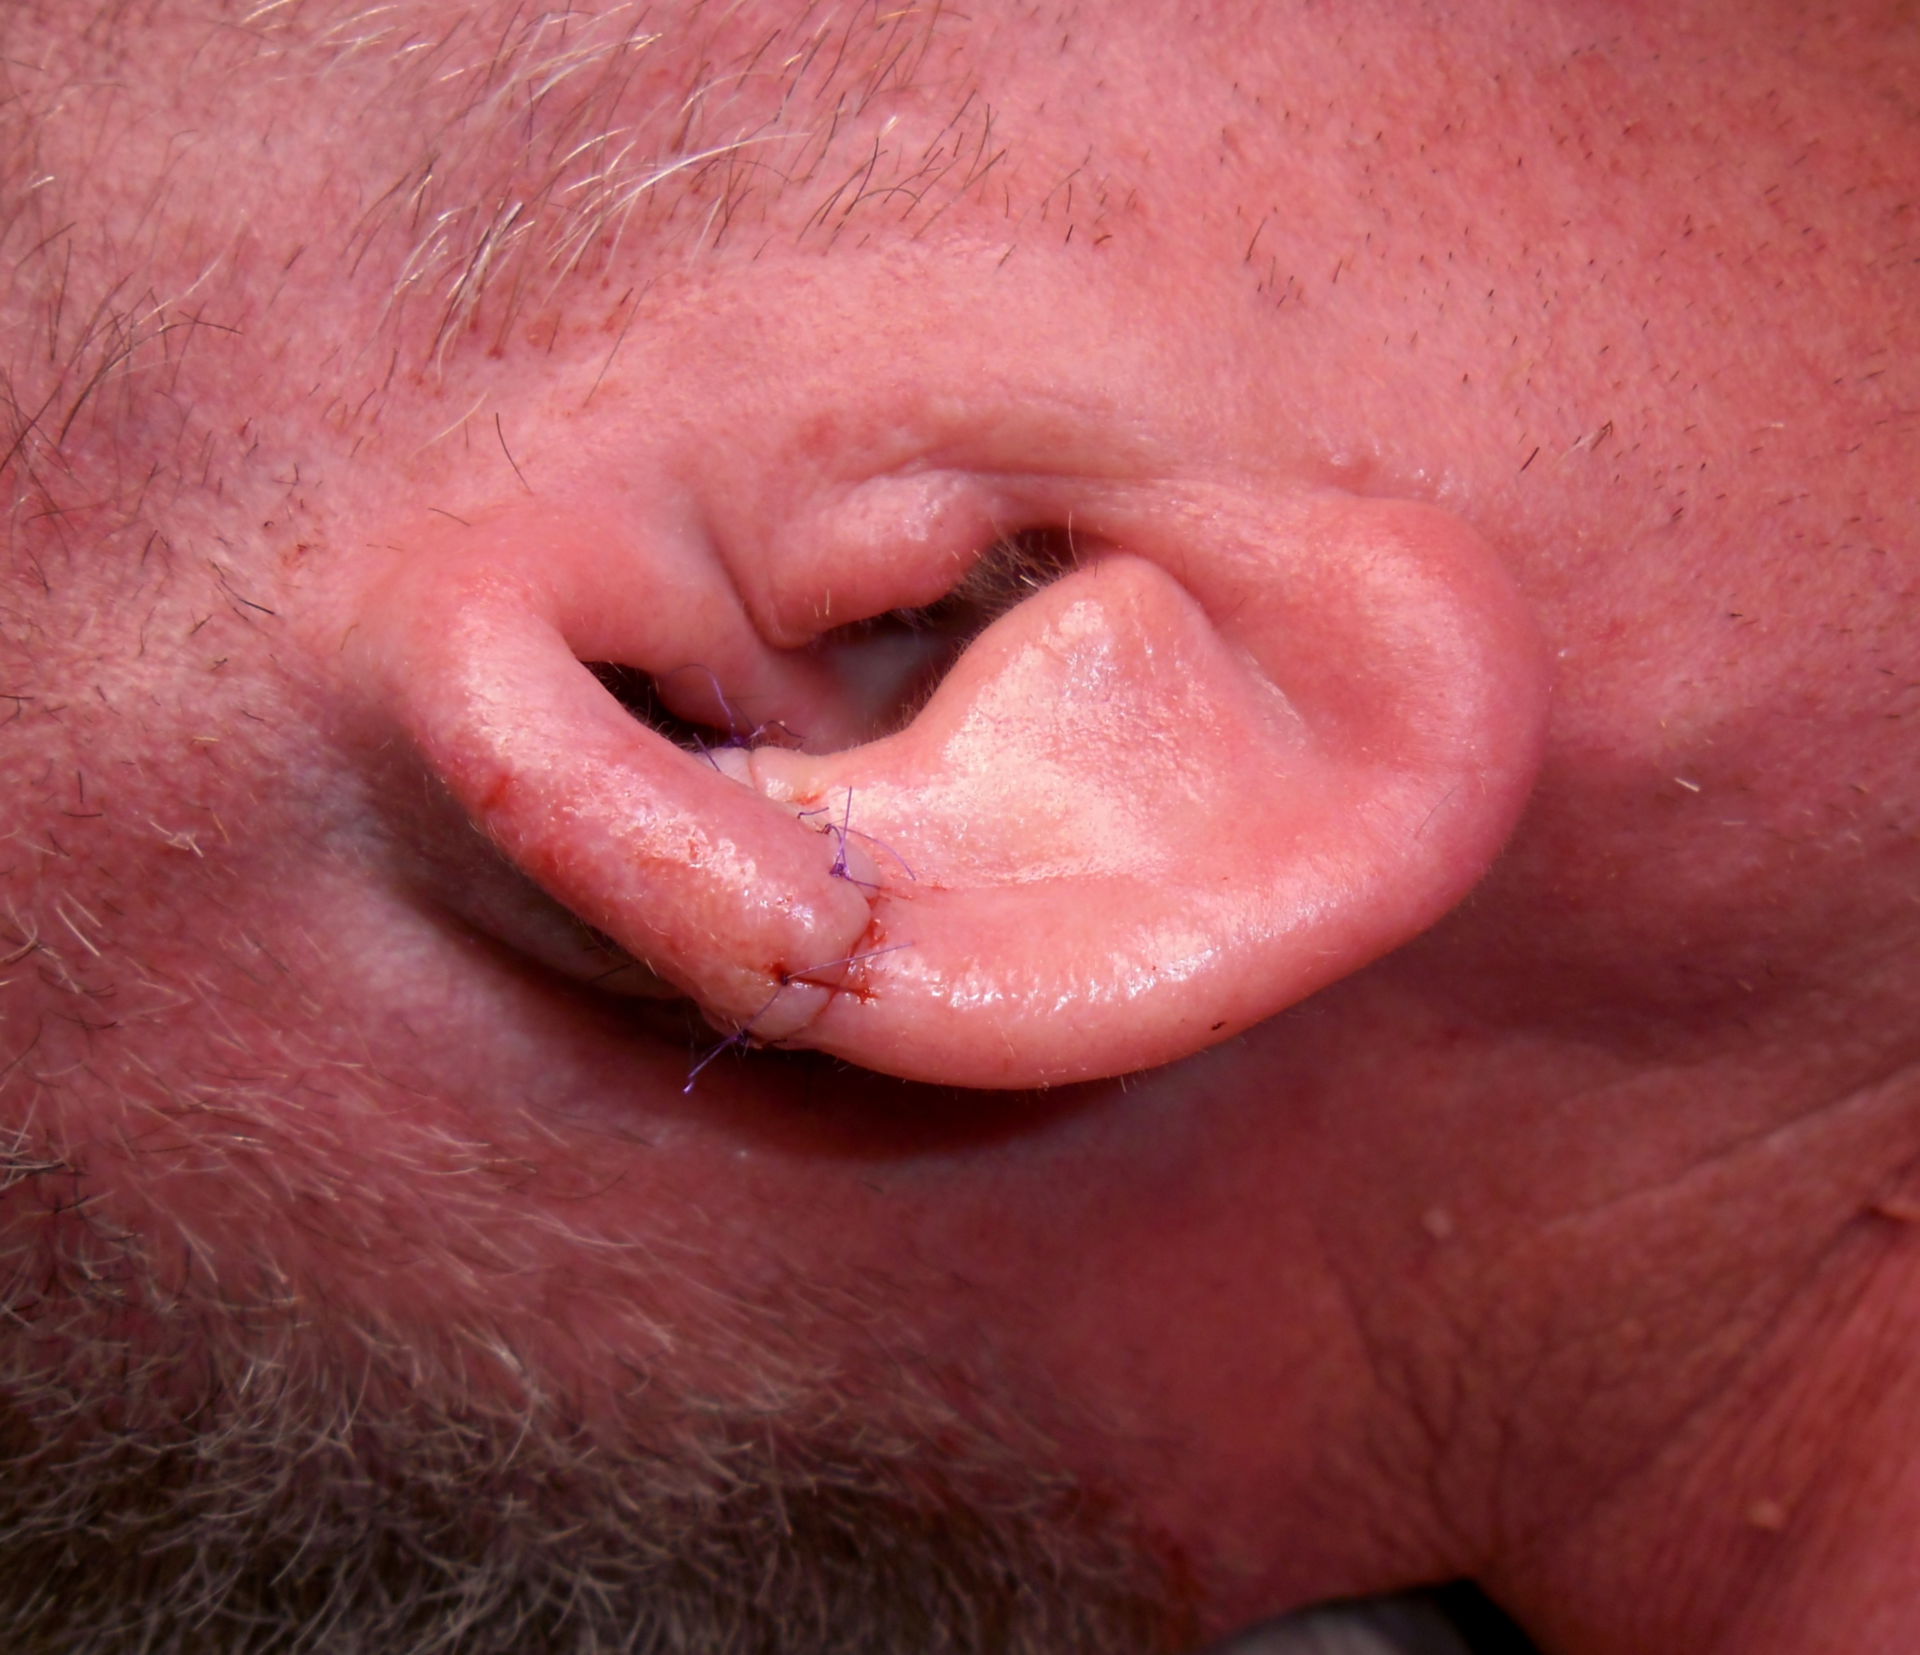 Resultado posquirúrgico después de una resección parcial del cartilago auricular